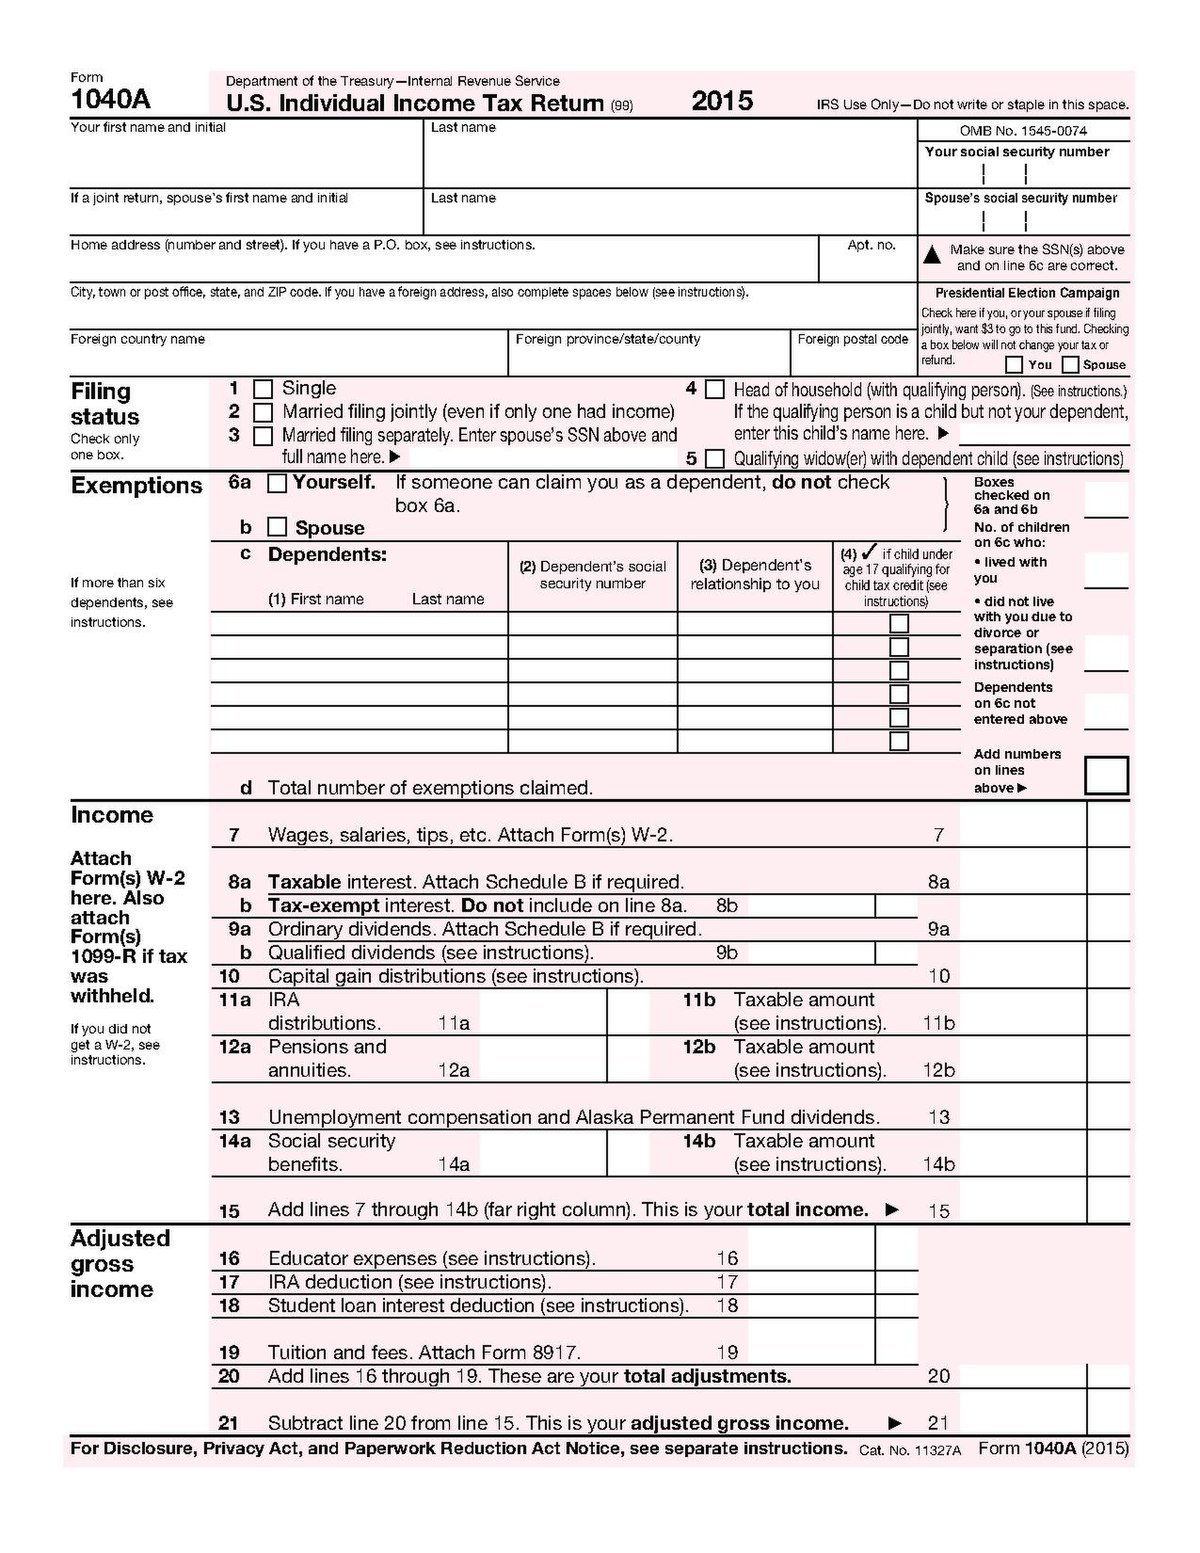 tax form 1040a